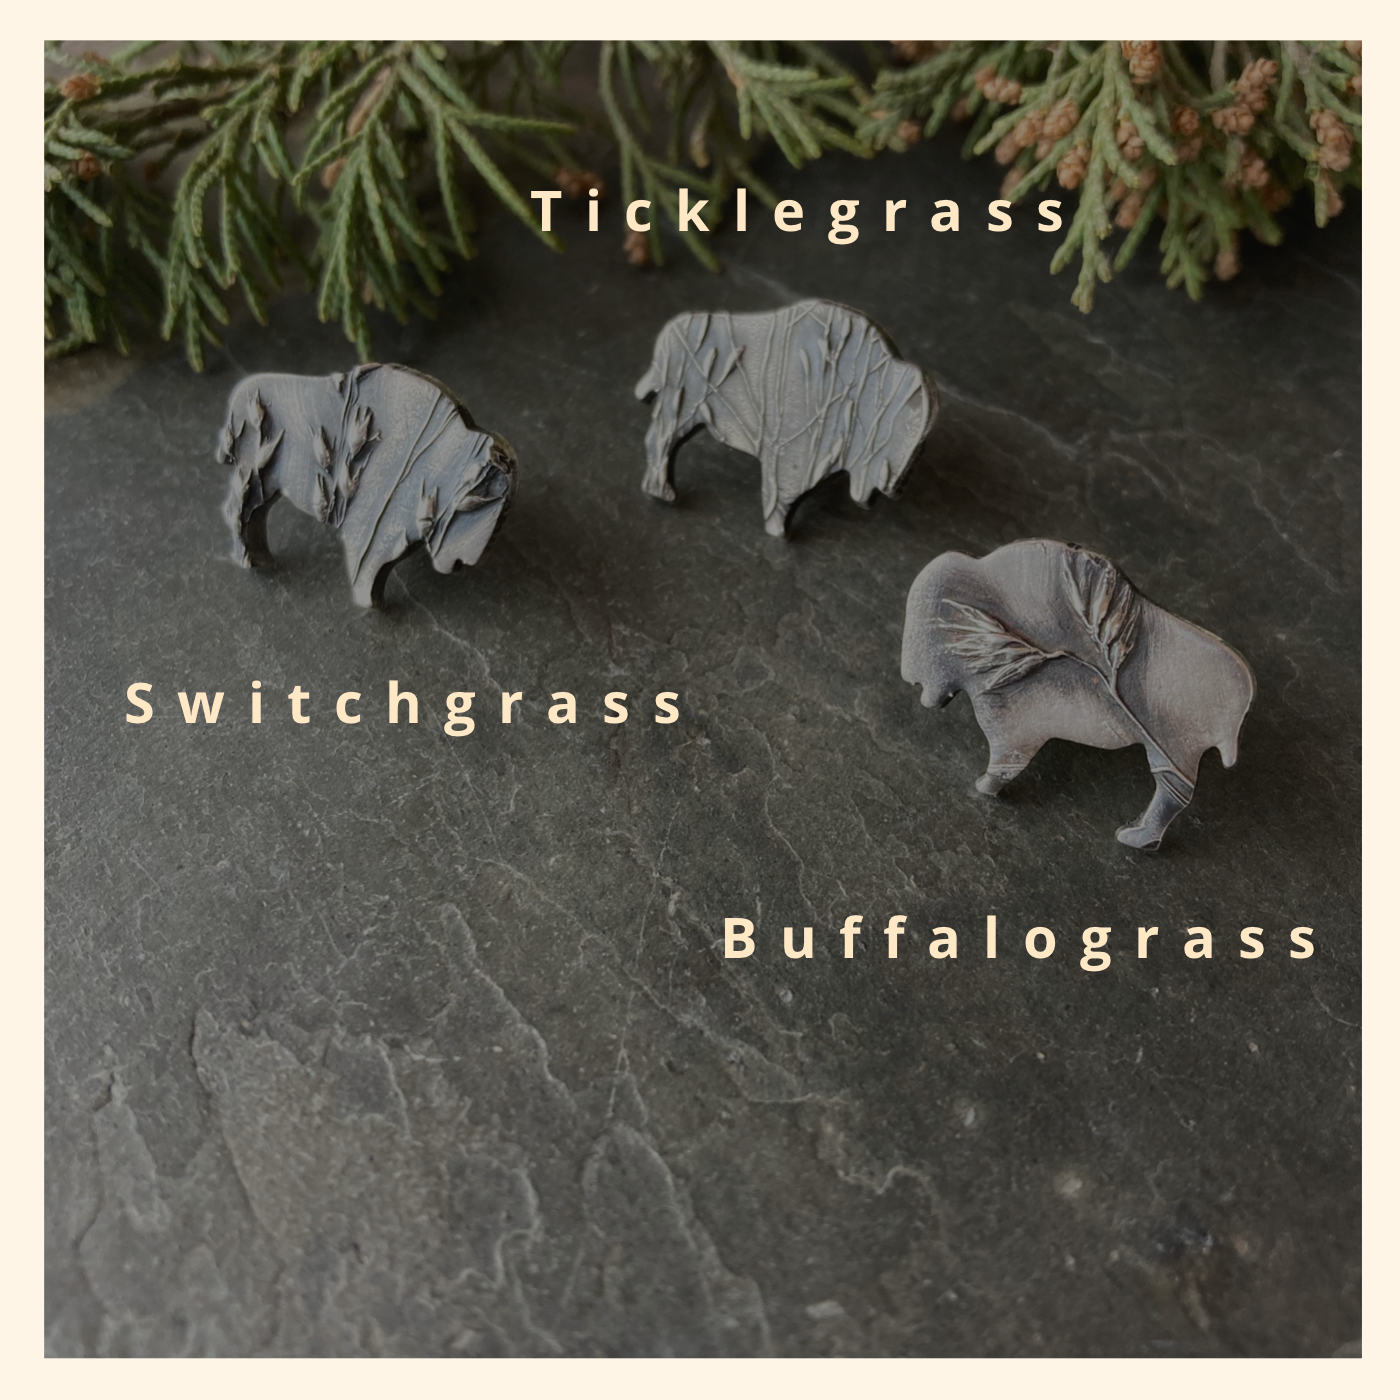 Bison Tie Tacks or Hat Pins, Textured with Prairie Grass